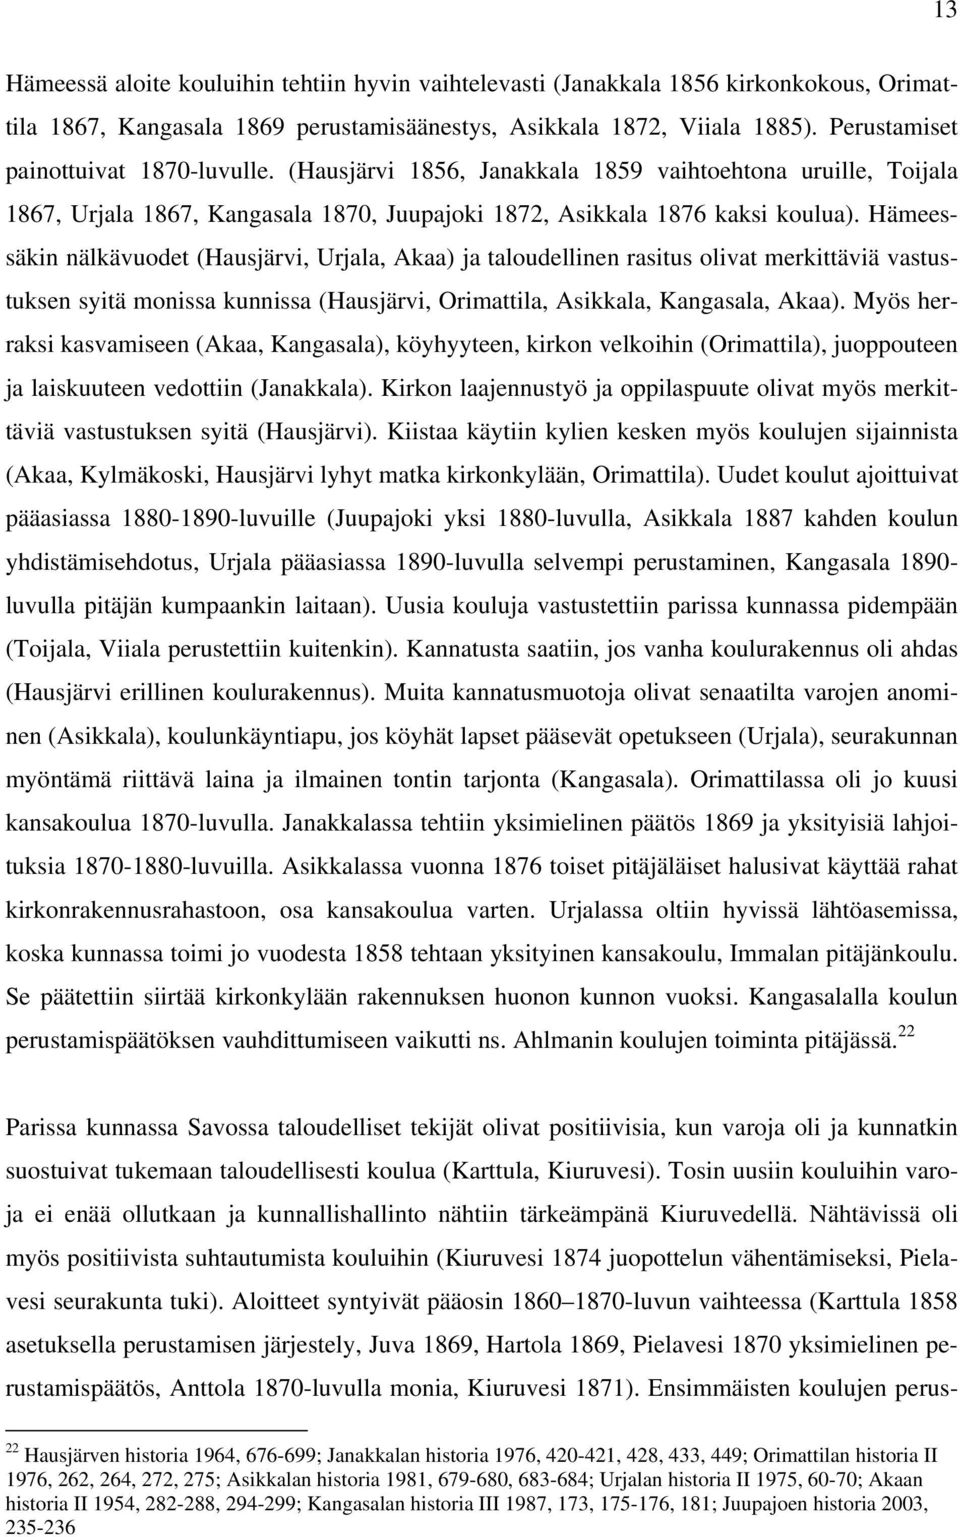 Hämeessäkin nälkävuodet (Hausjärvi, Urjala, Akaa) ja taloudellinen rasitus olivat merkittäviä vastustuksen syitä monissa kunnissa (Hausjärvi, Orimattila, Asikkala, Kangasala, Akaa).